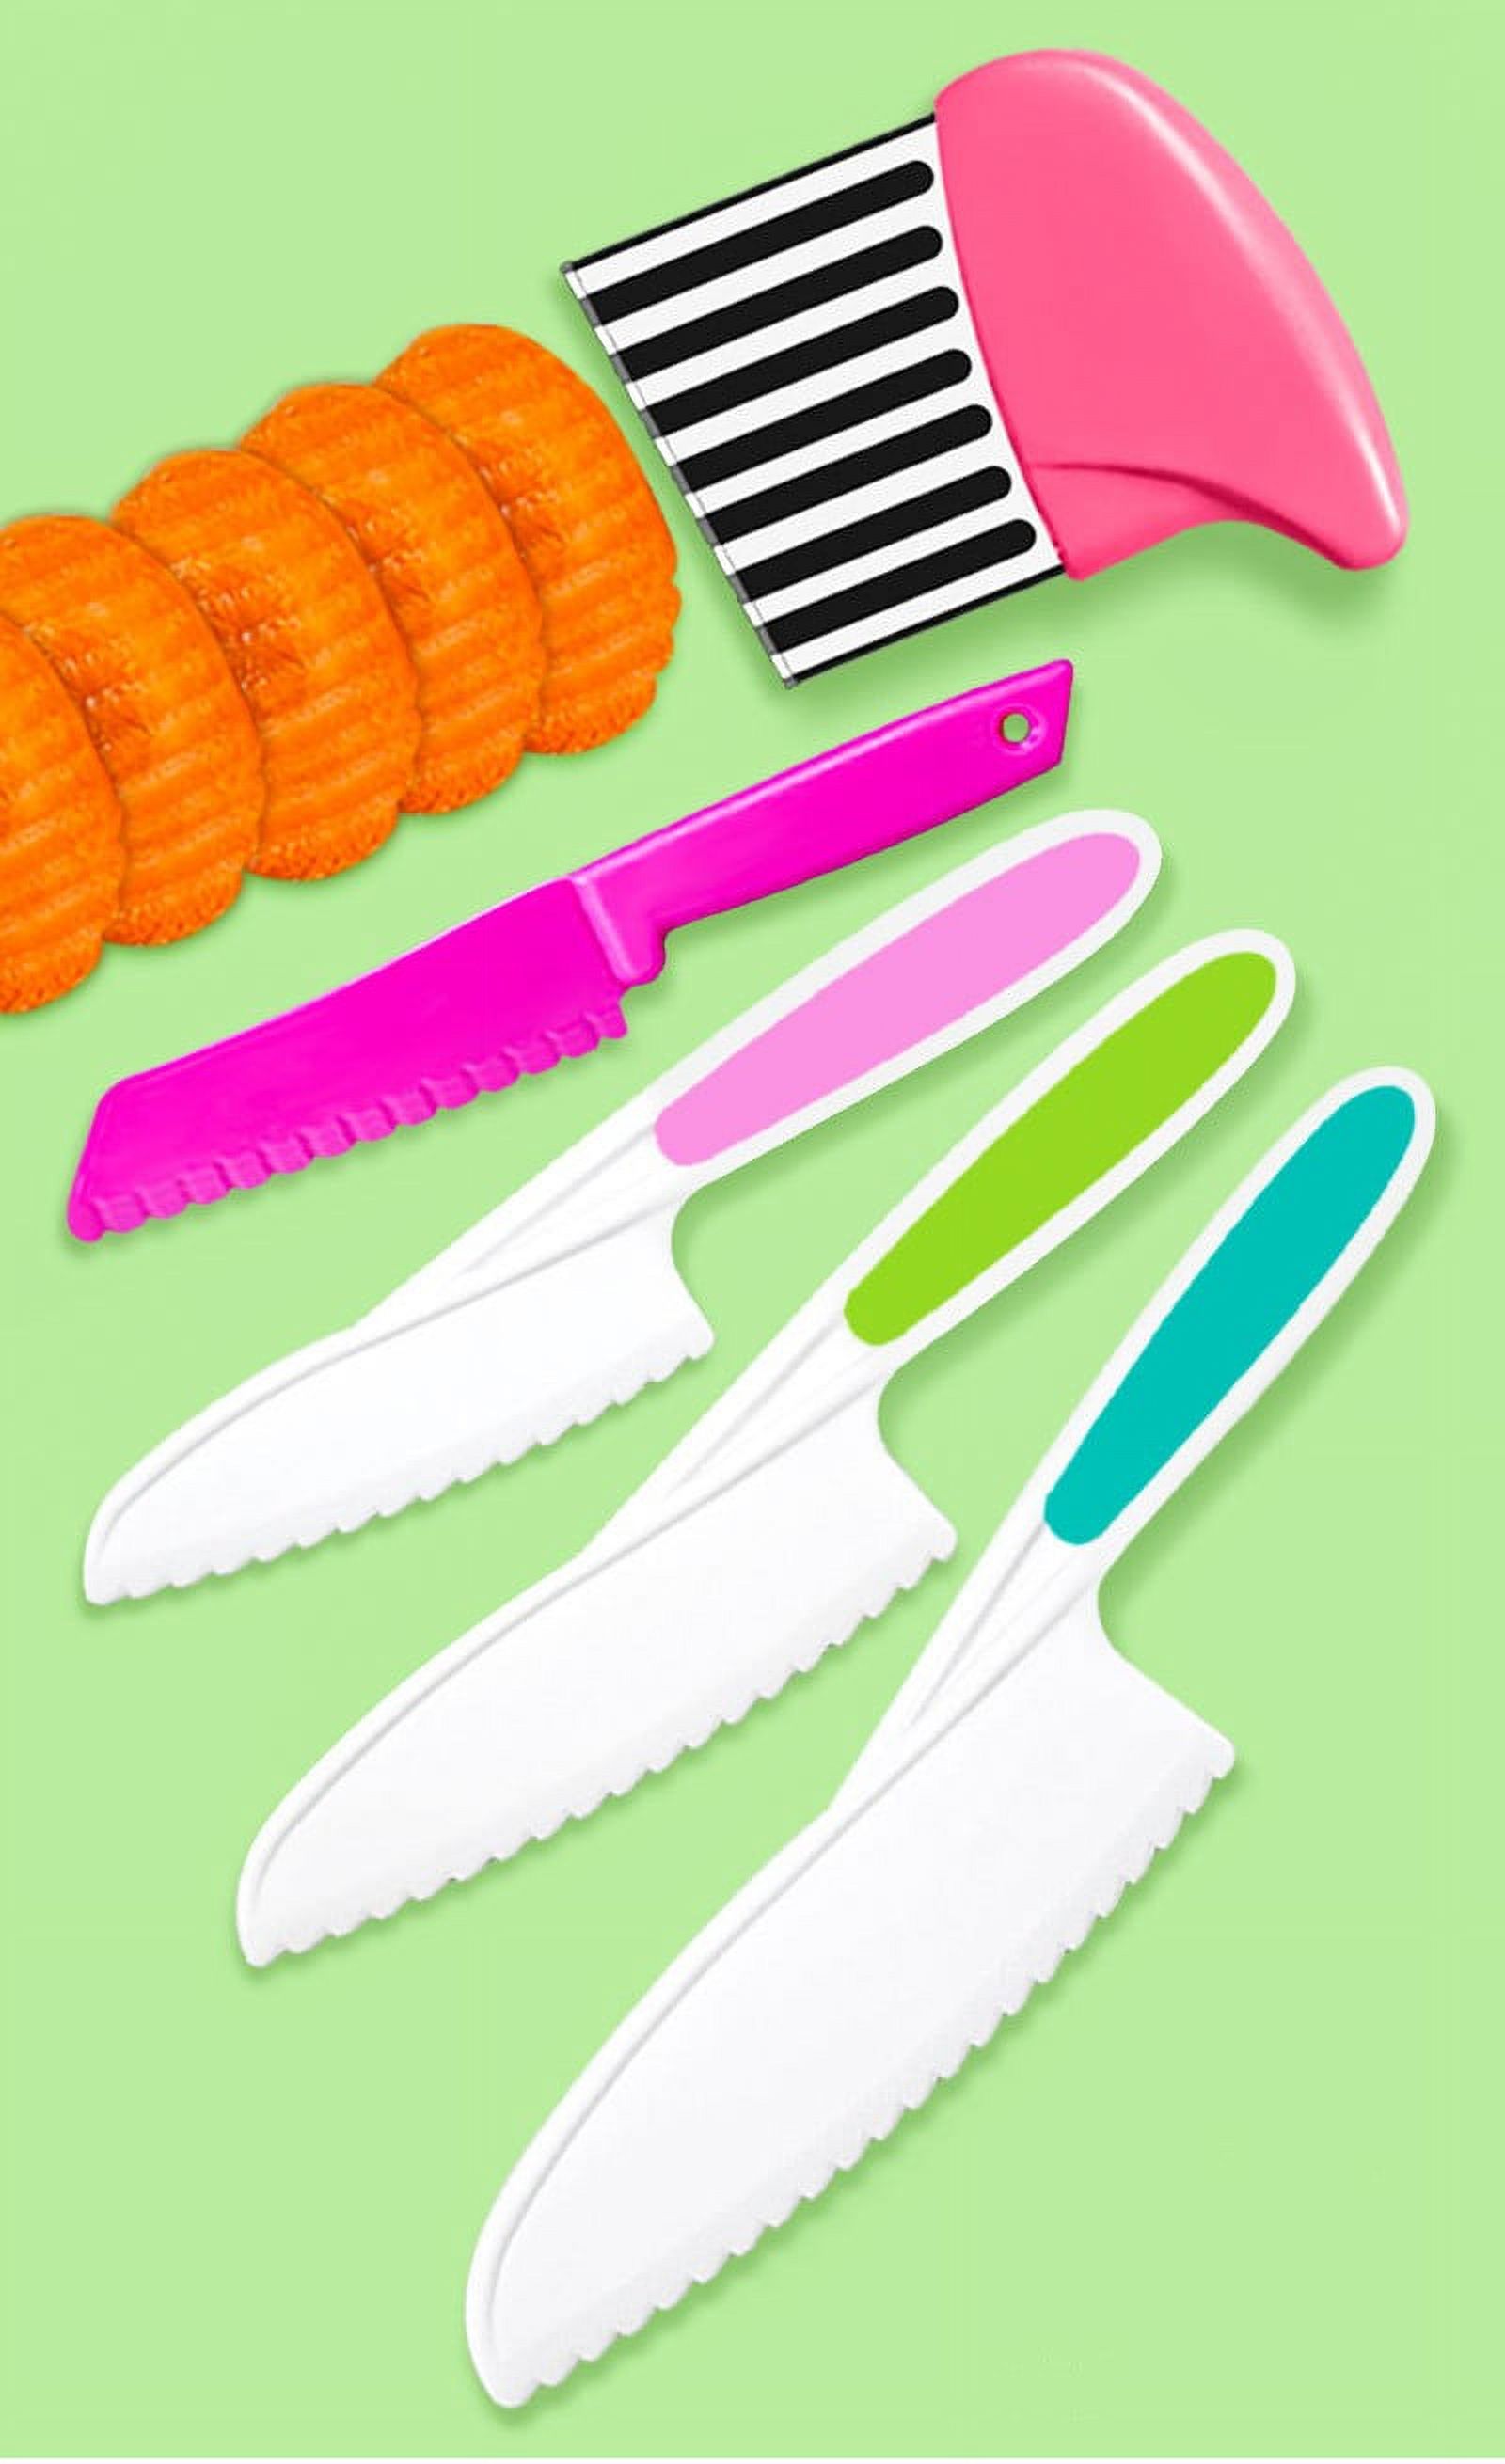 5 Pcs Kids Knife Set, Kids Safe Cooking Knives, Nylon Kids Kitchen Knife  with Crinkle Cutter, Serrated Edges Plastic Toddler Knife Kids Knives for